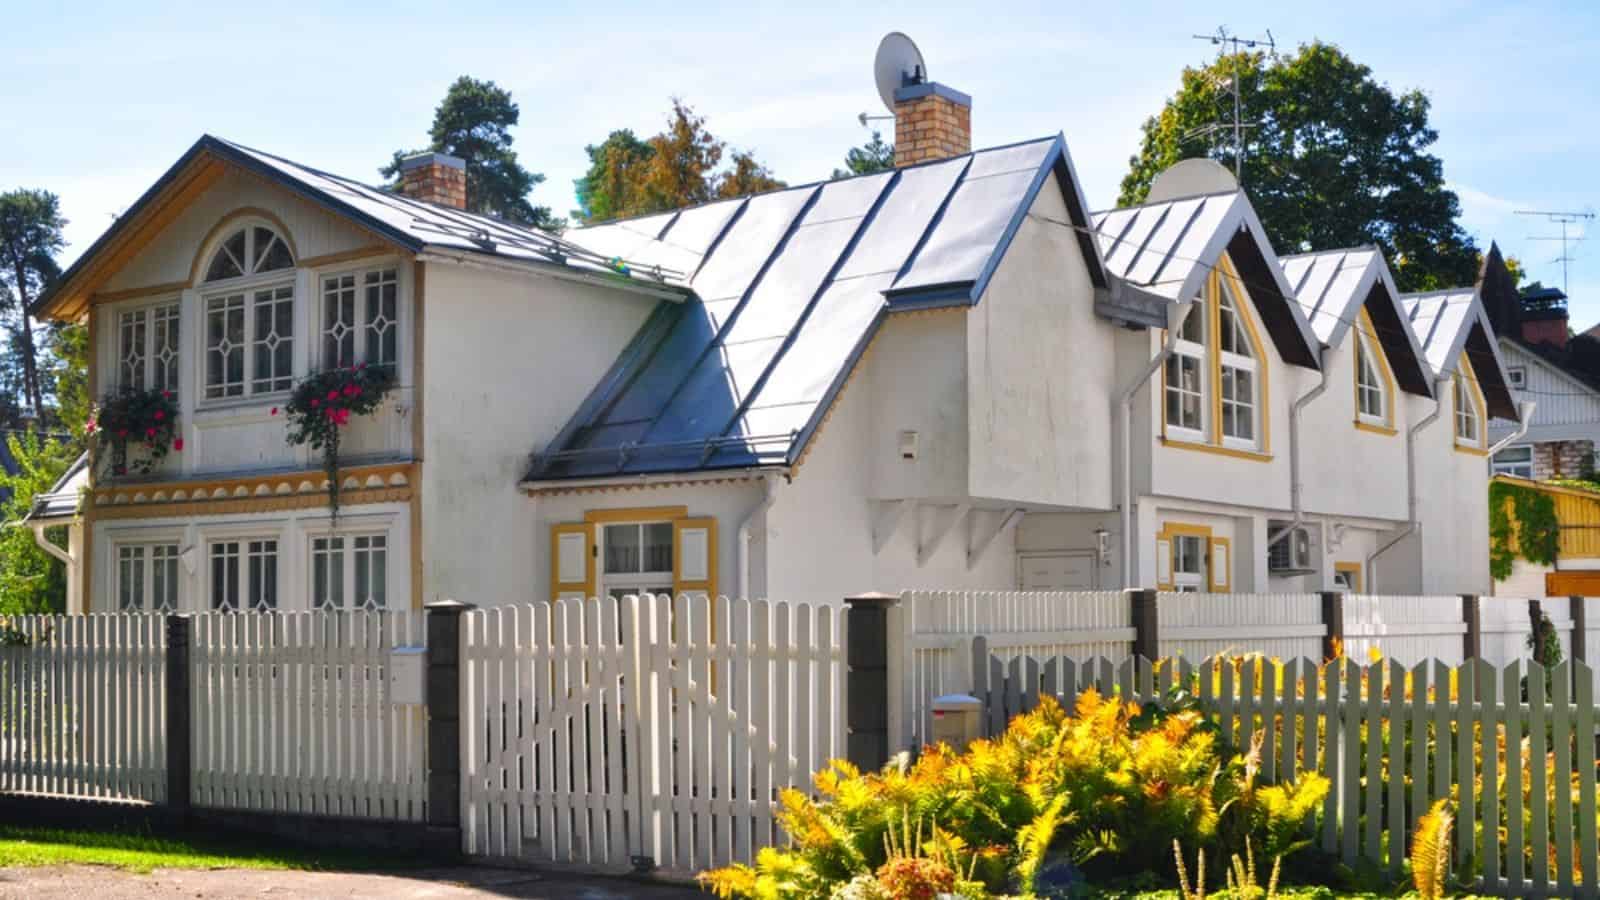 House at sunny day in Yurmala, Latvia